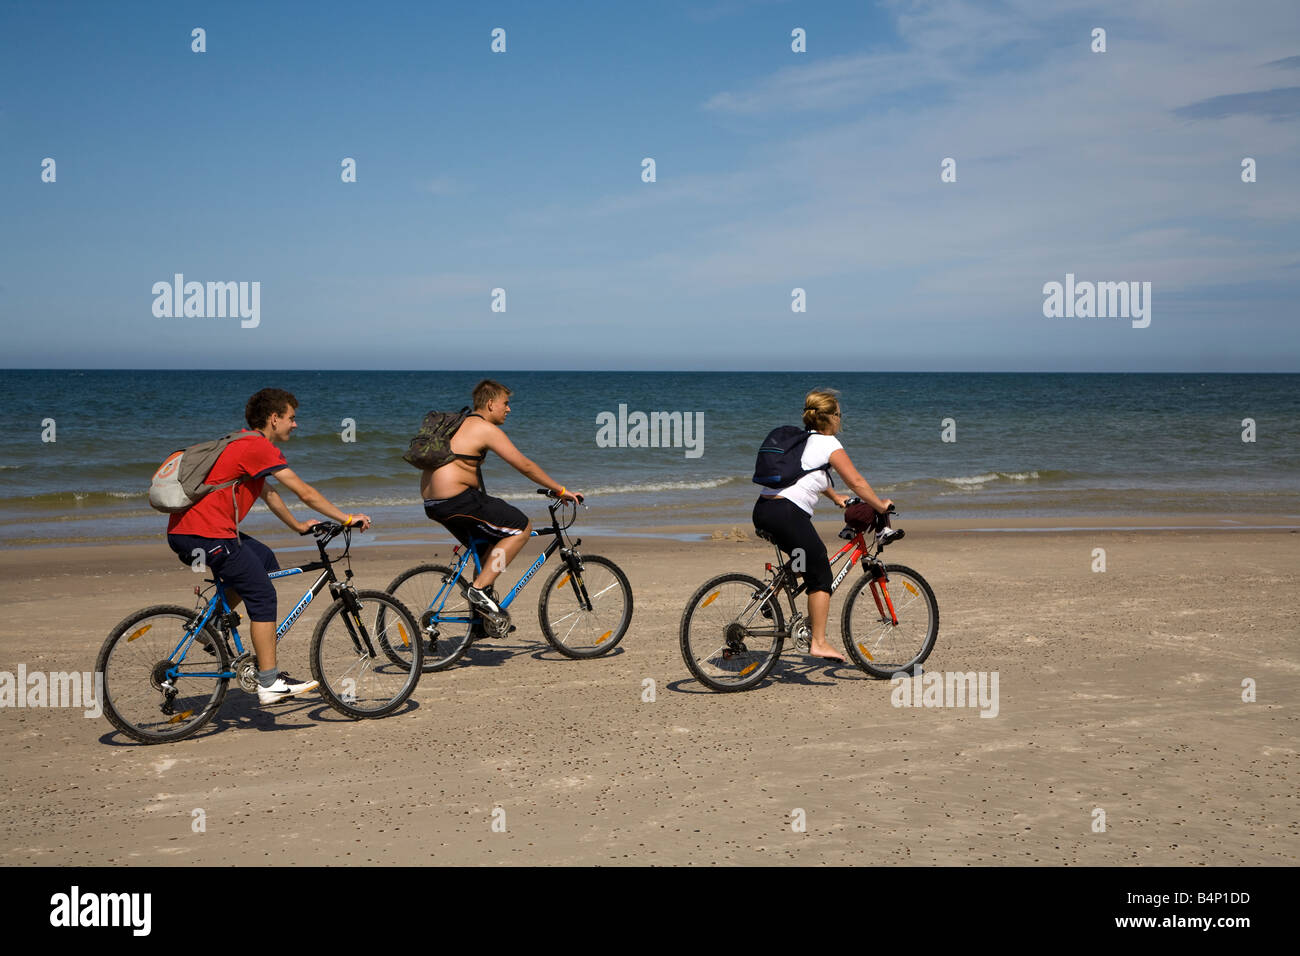 Trois personnes randonnée à vélo sur la plage sur la mer Baltique Pologne Parc national Slowinski Banque D'Images